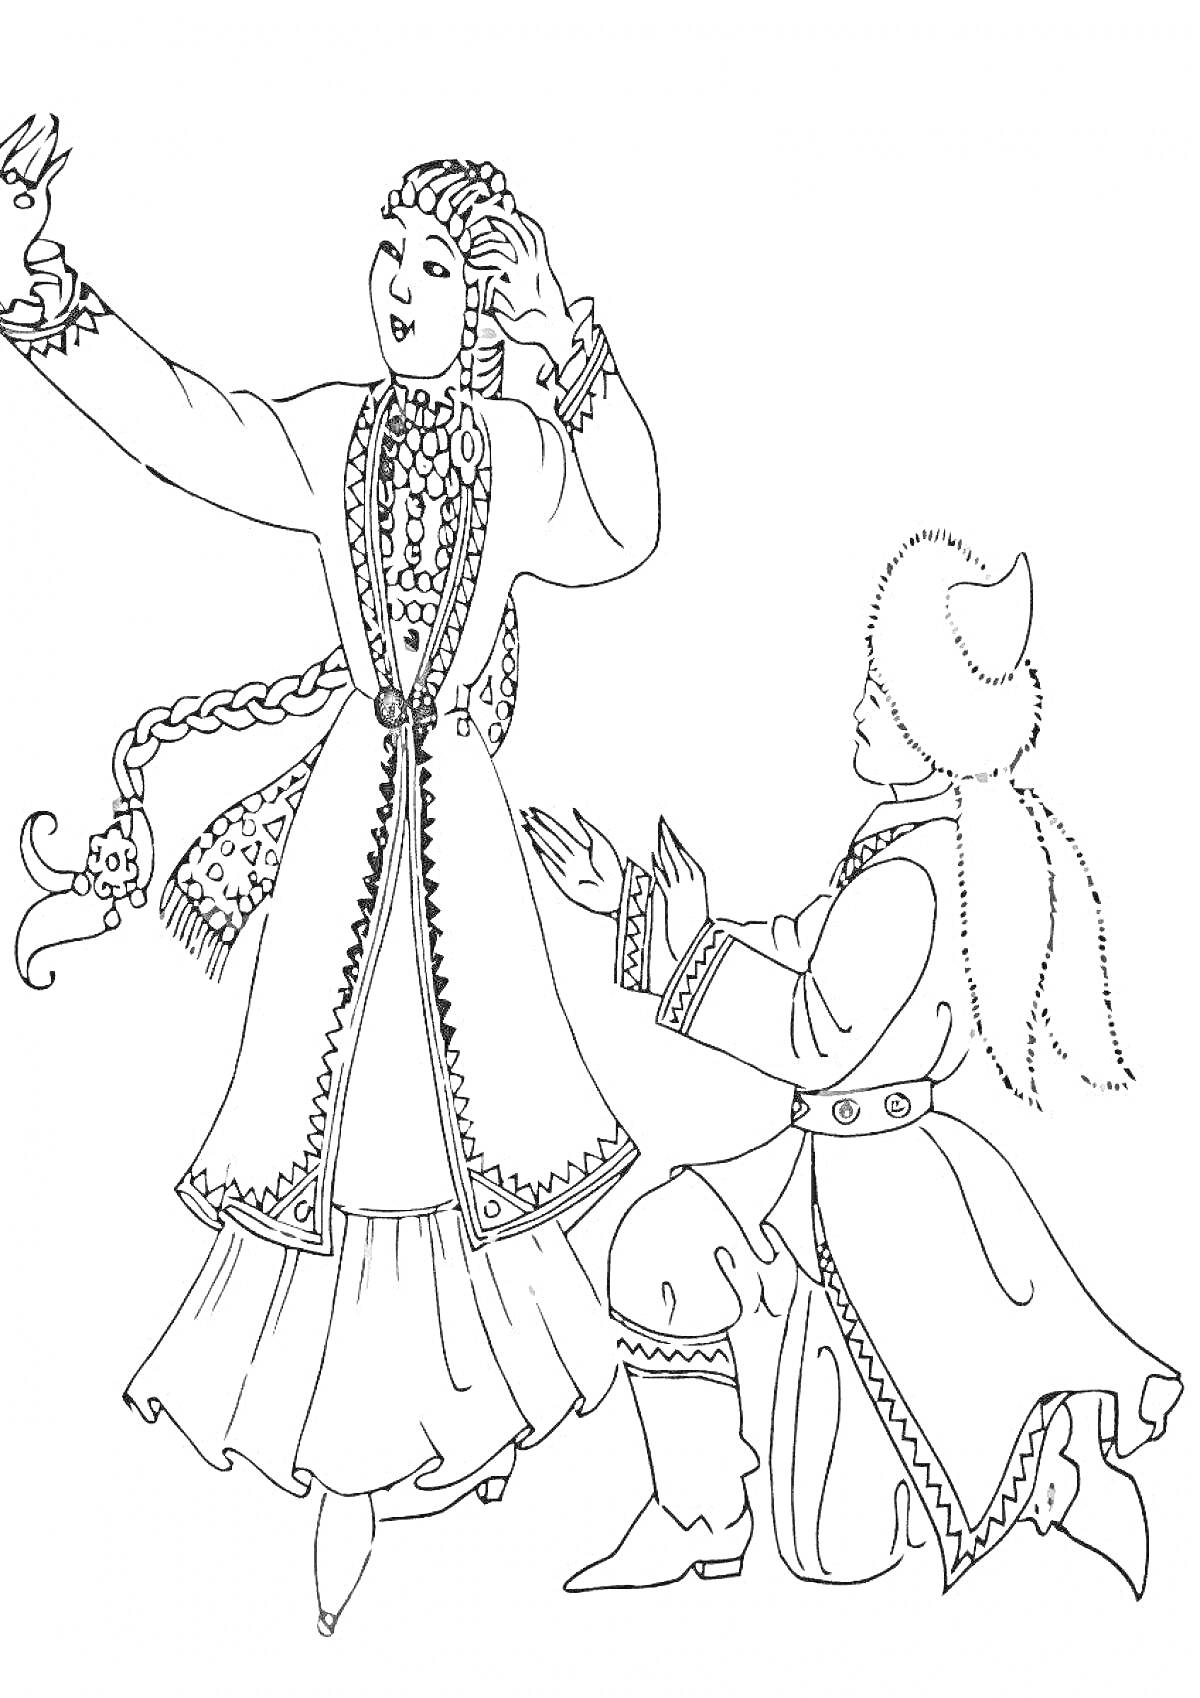 Раскраска Традиционный казахский танец с мужчиной и женщиной в национальных костюмах